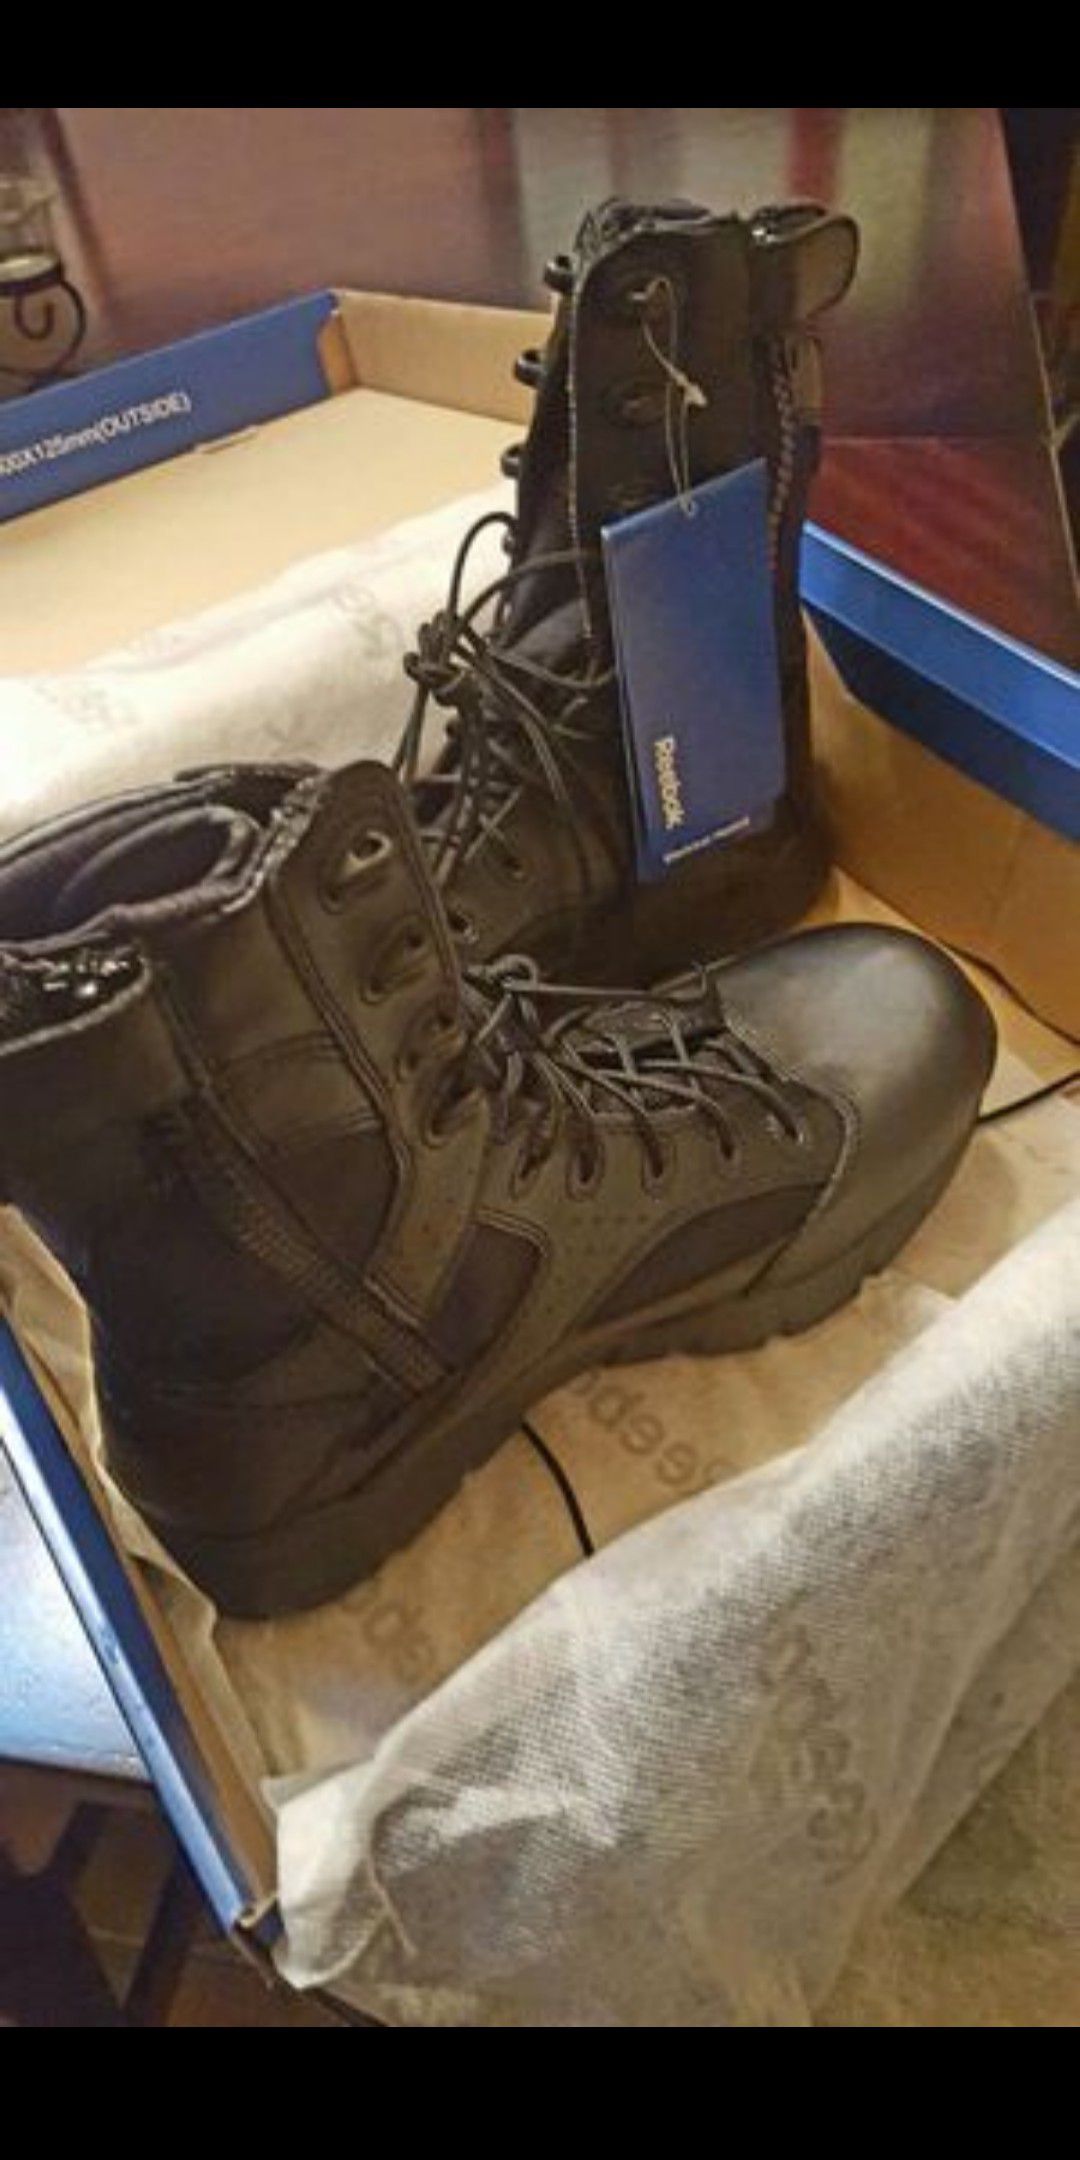 Men's Reebok Work boots Size 8W